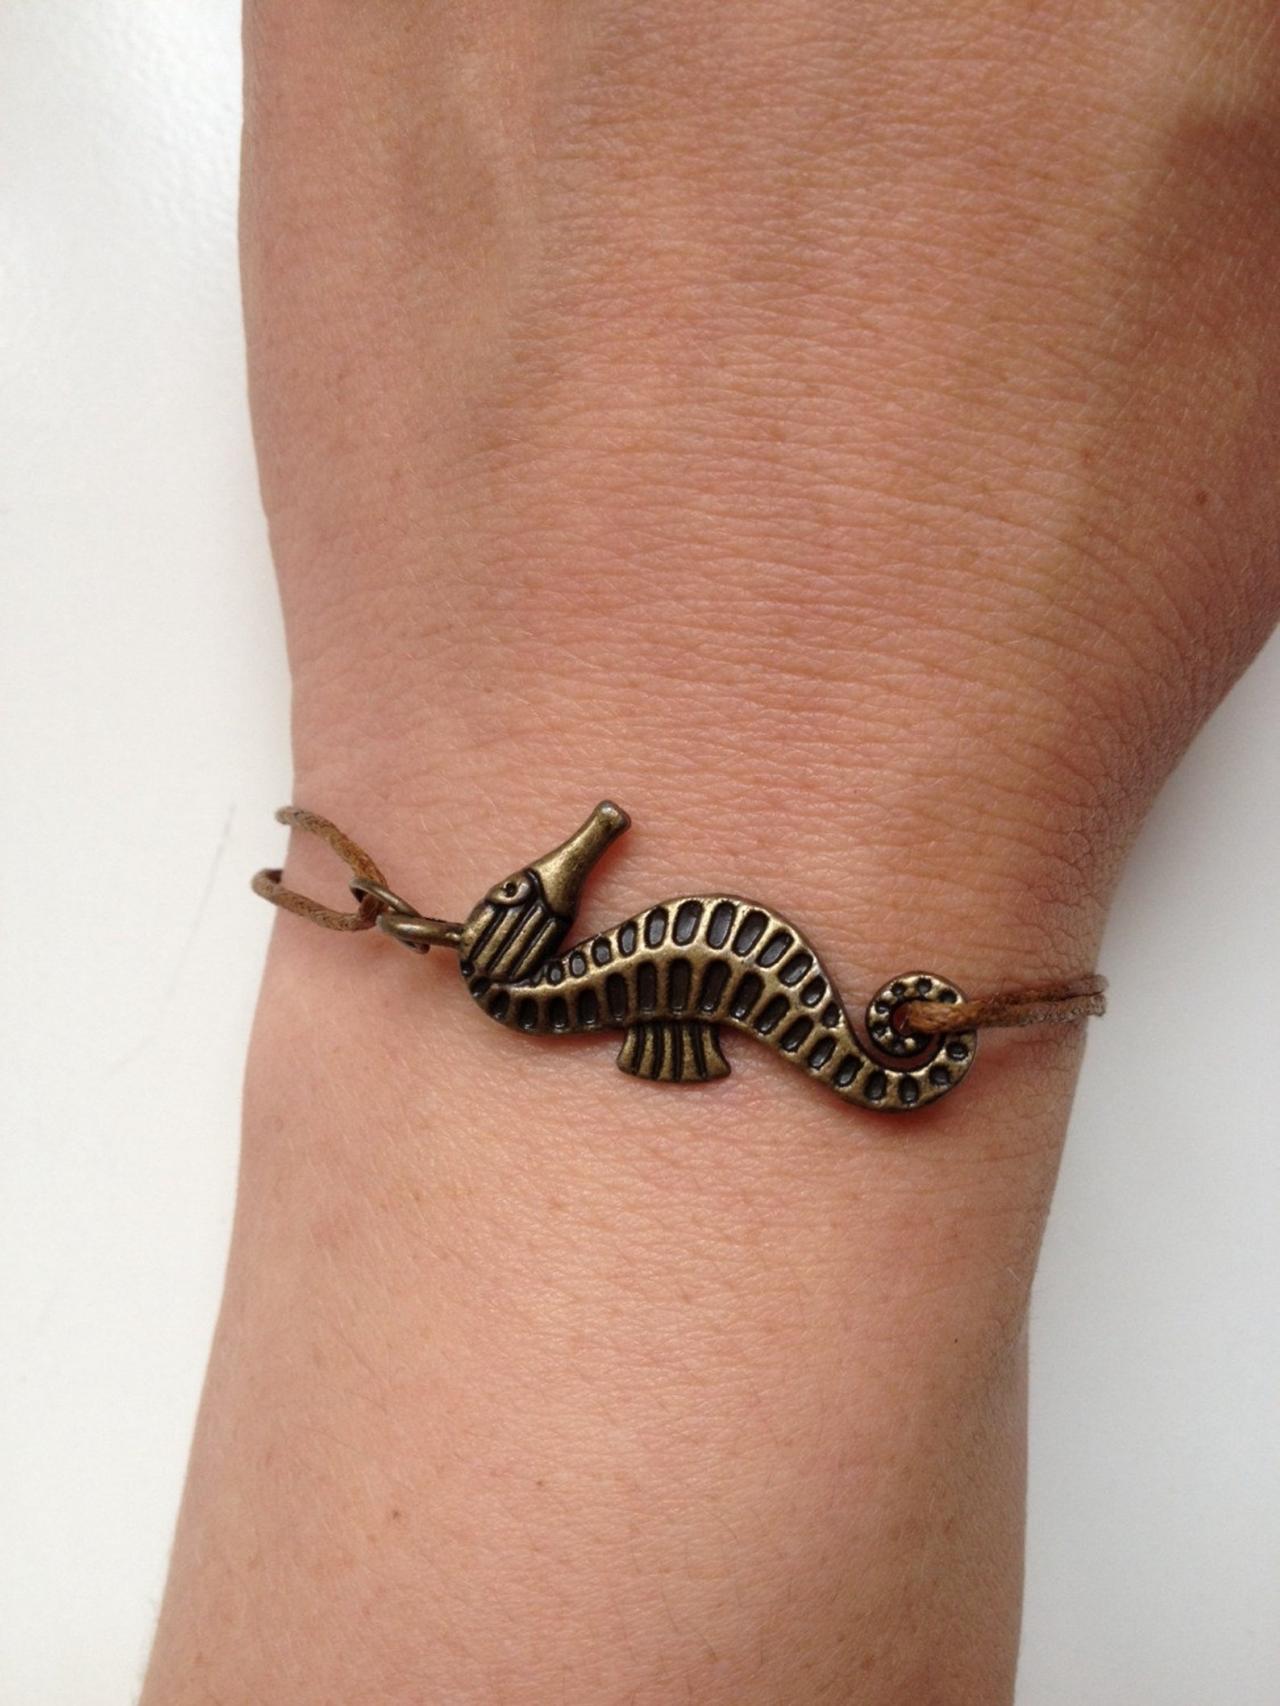 Seahorse Bracelet 121- Friendship Bronze Charm Waxed Cotton Bracelet Love Gift Adjustable Current Womenswear Unique